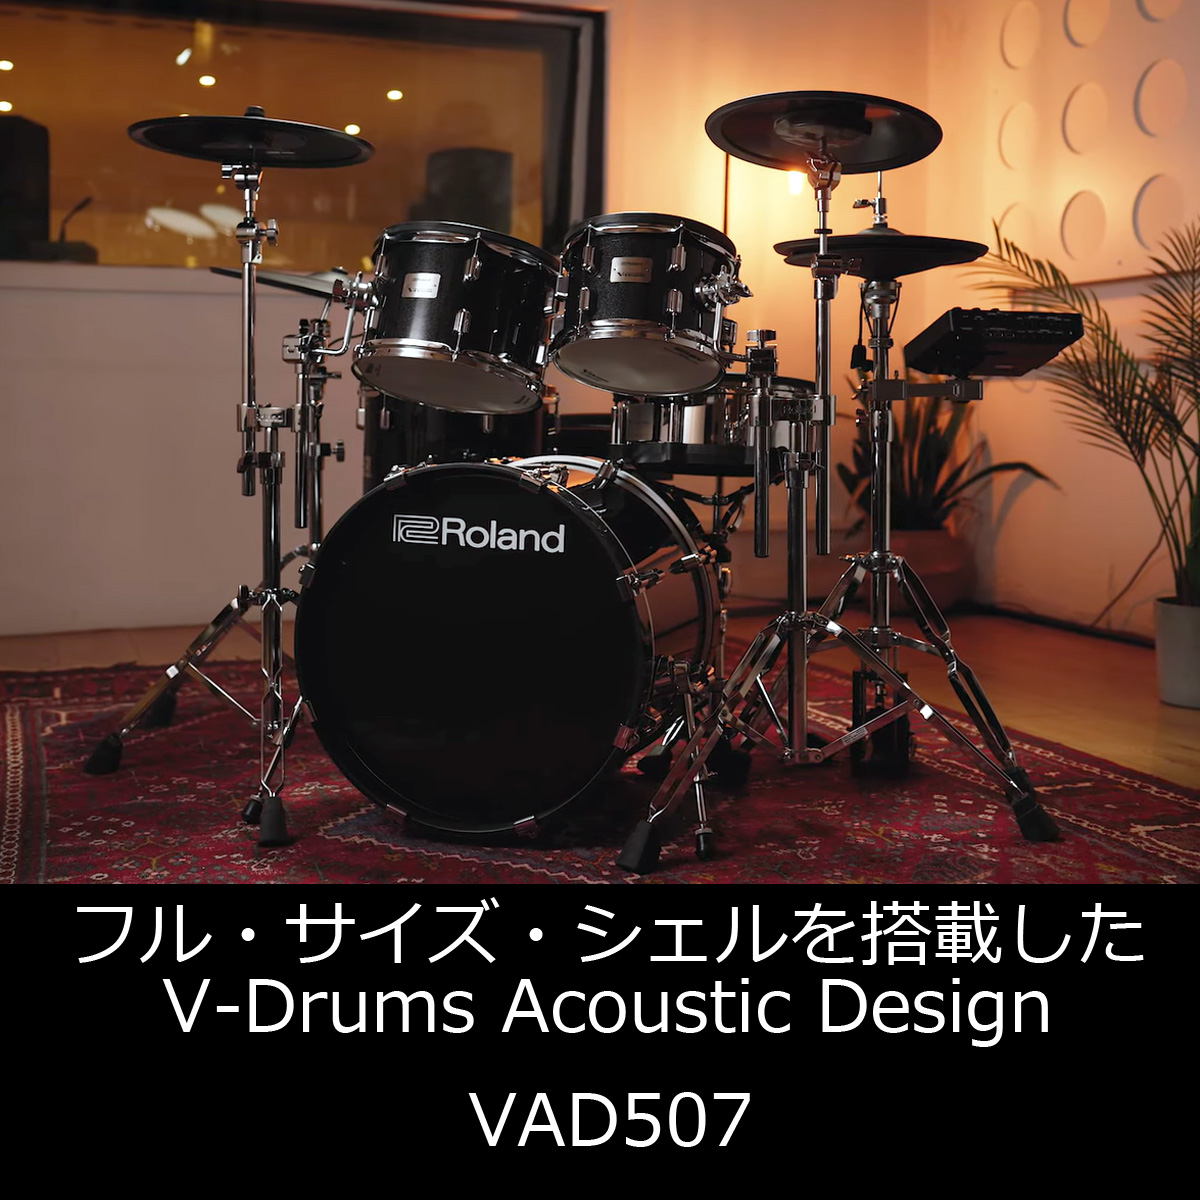 Roland 電子ドラム演奏用 V-Drumsヘッドホン VMH-D1